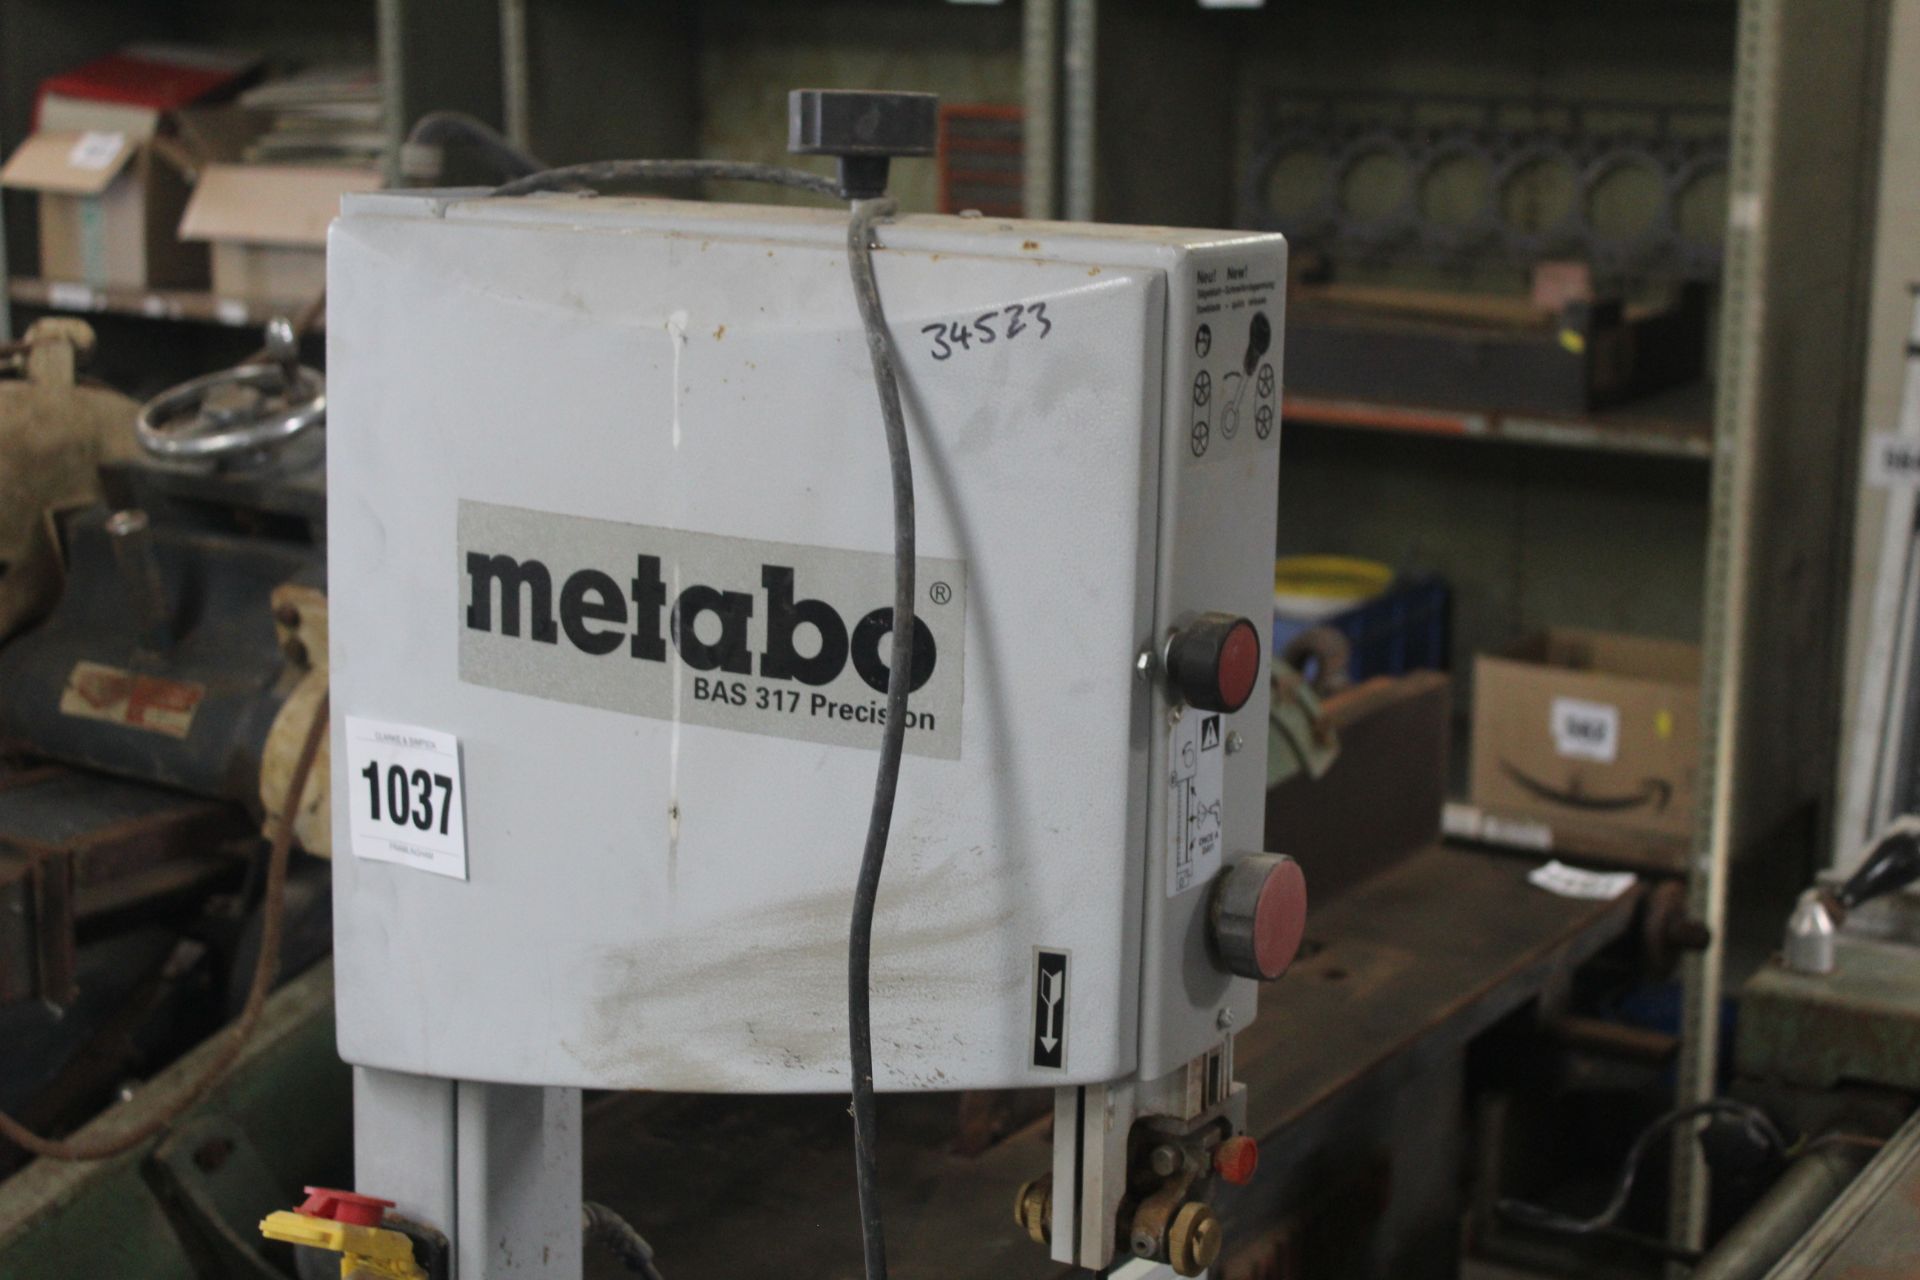 Metabo 240v band saw. - Image 2 of 7